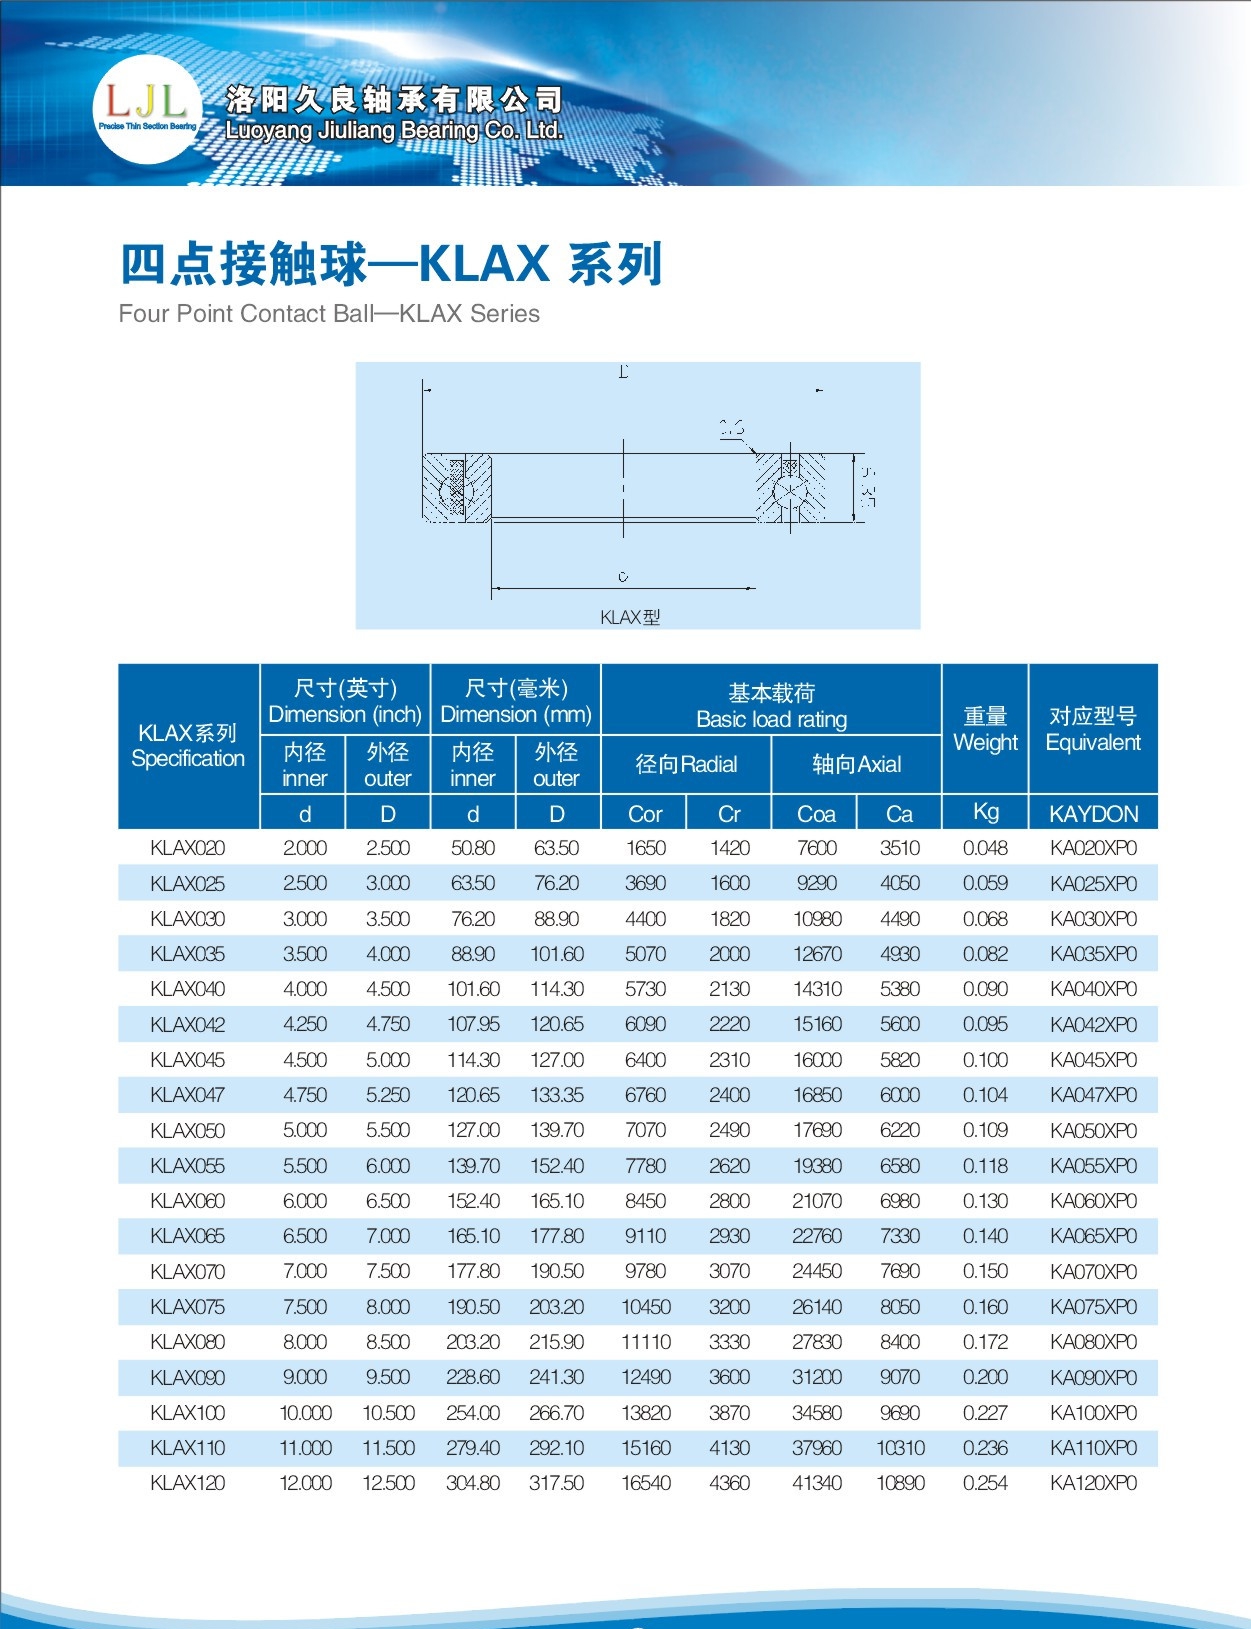 KLAX020	 | 
KLAX025	 | 
KLAX030	 | 
KLAX035	 | 
KLAX040	 | 
KLAX042	 | 
KLAX045	 | 
KLAX040	 | 
KLAX047	 | 
KLAX050	 | 
KLAX055	 | 
KLAX060	 | 
KLAX065	 | 
KLAX070	 | 
KLAX075	 | 
KLAX080	 | 
KLAX090	 | 
KLAC100	 | 
KLAC110	 | 
KLAC120	 | 